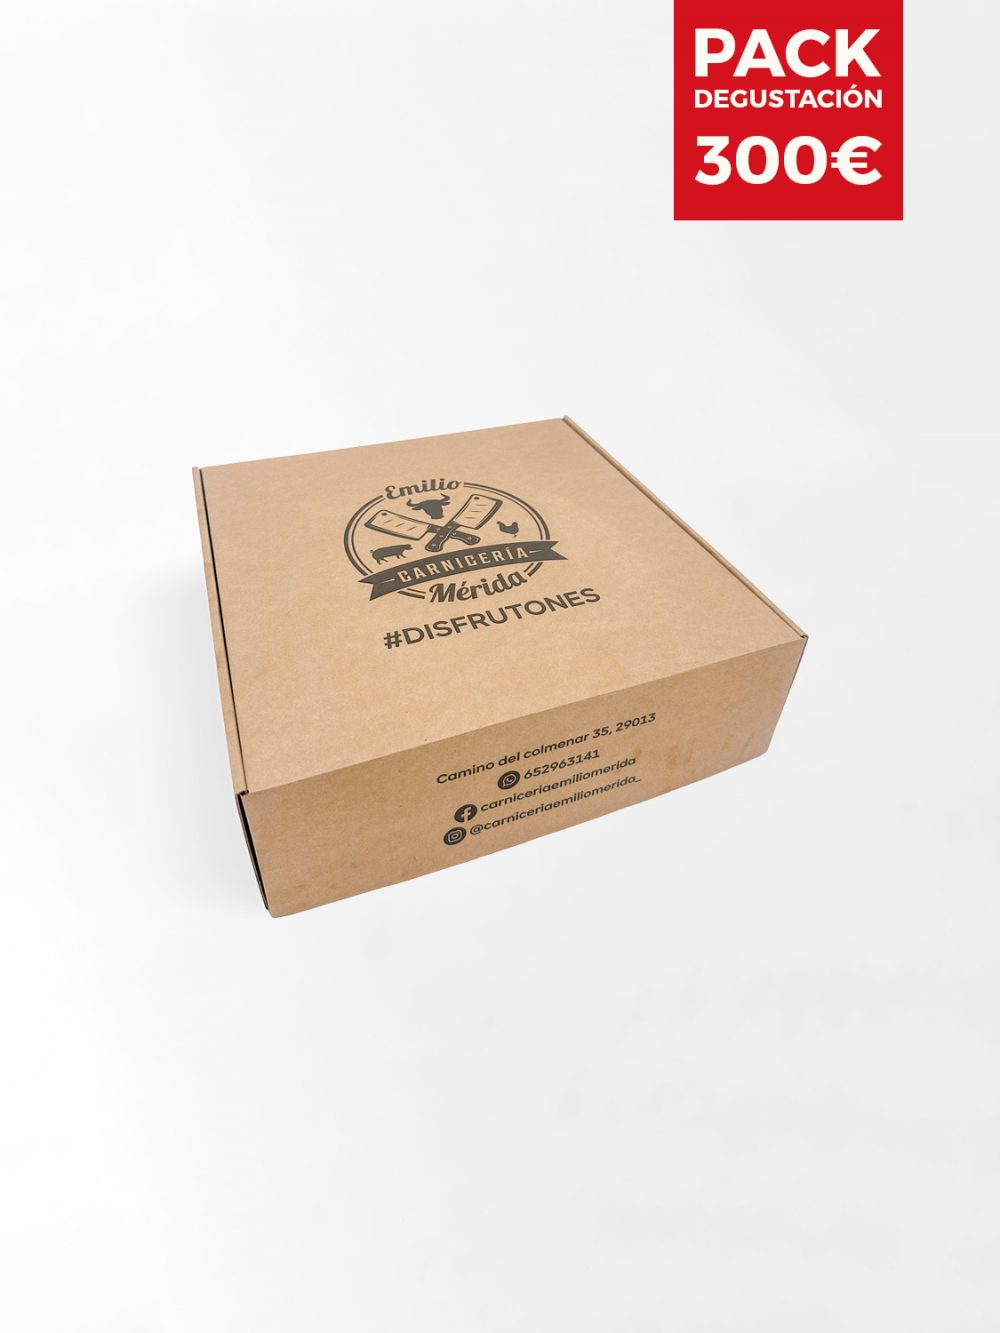 Pack Degustación - 300€ (Incluye 500gr de Wagyu Japonés y 500gr de Buey)